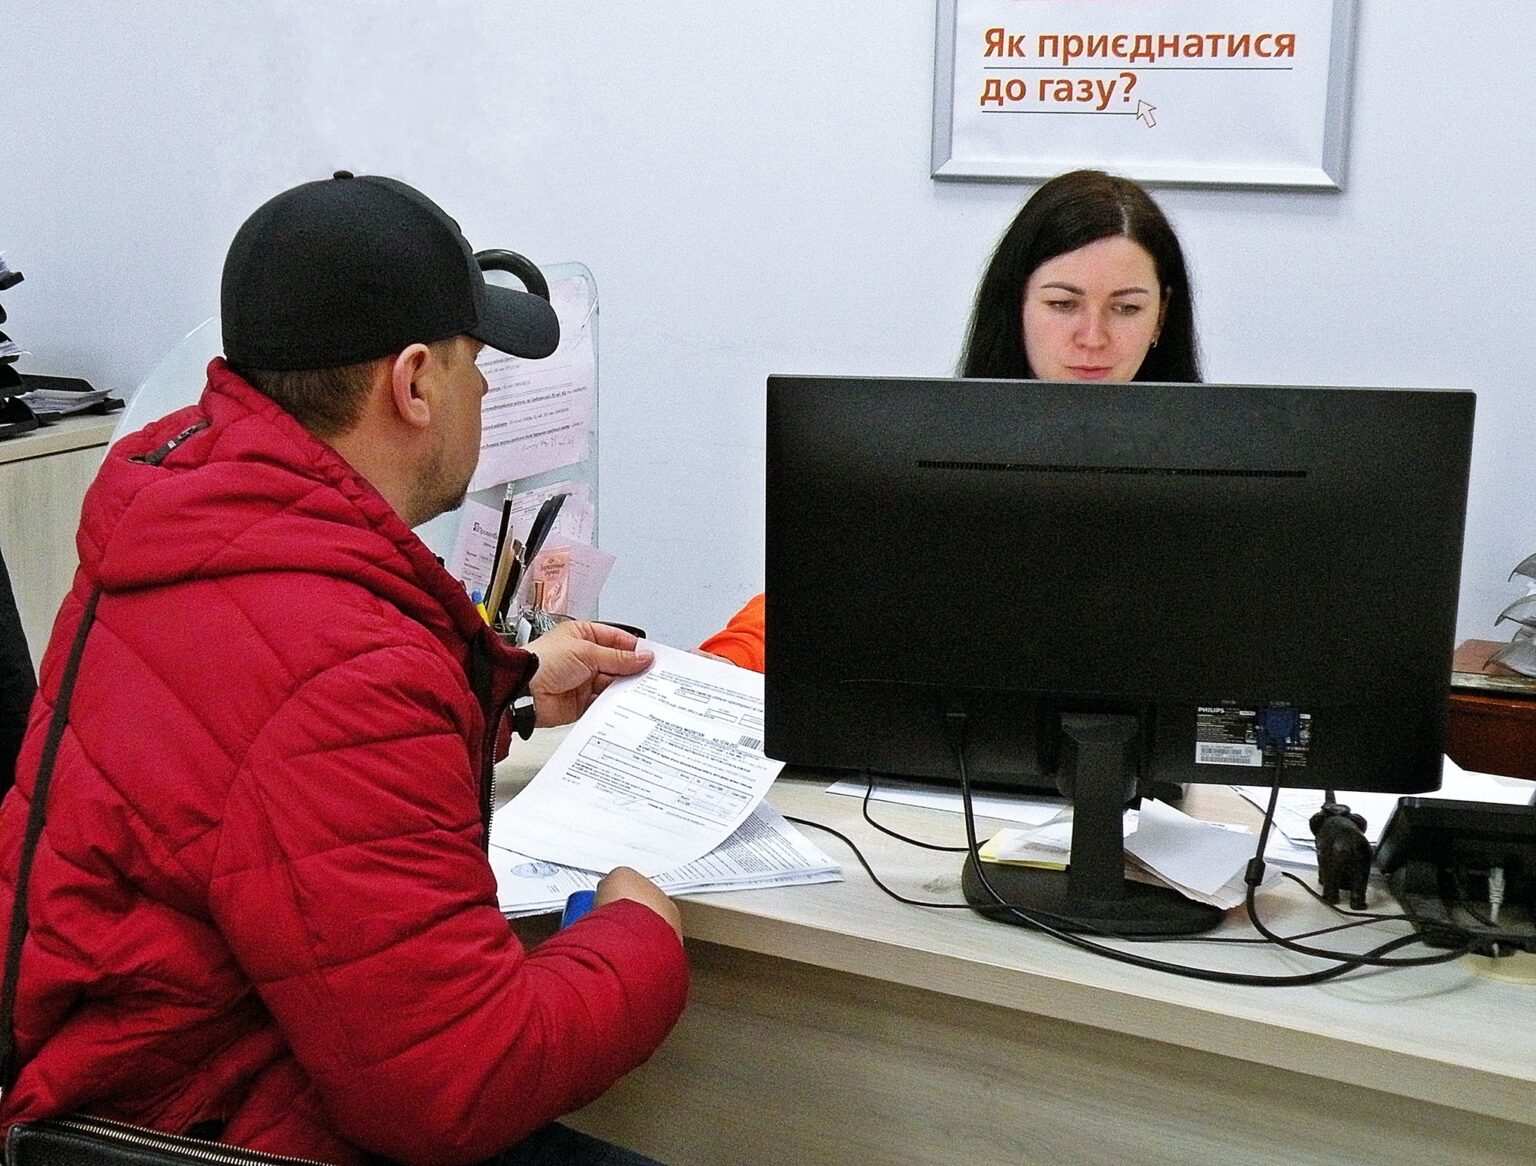 Дніпрогаз контакти: адреси ЦОК і телефони - Дніпро Регіон